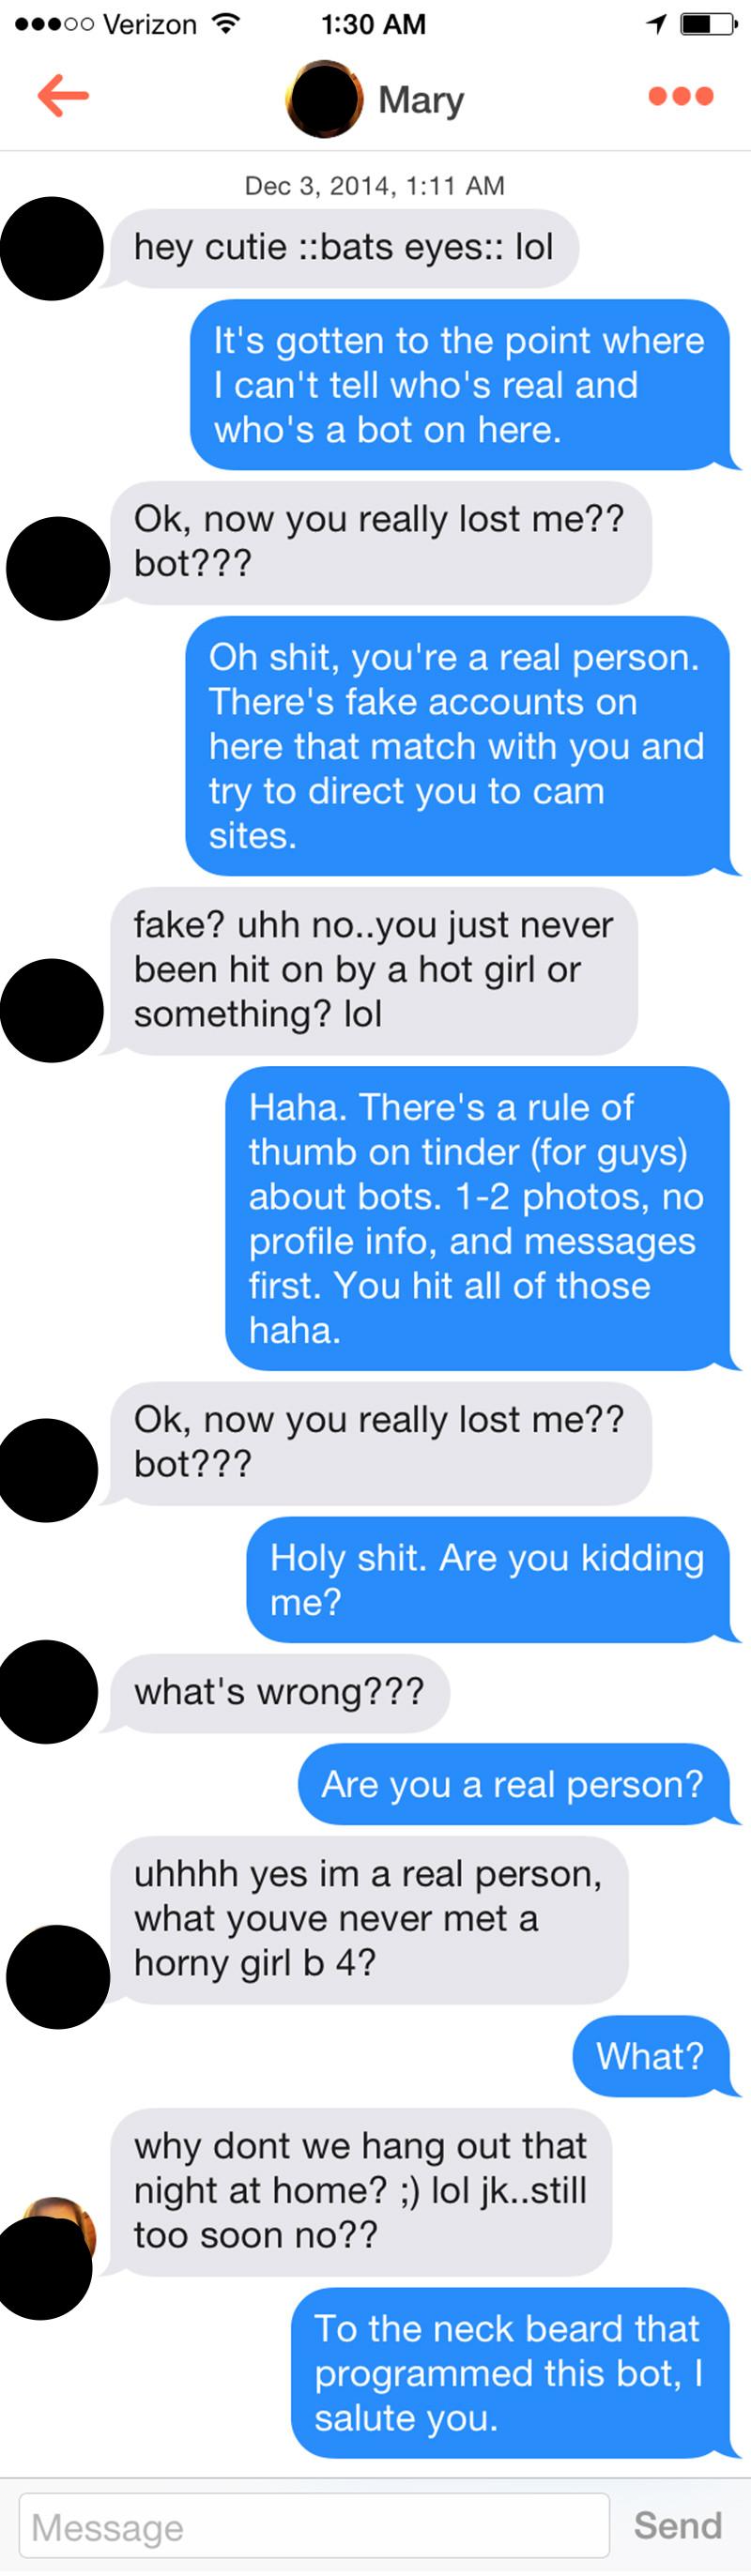 Clever Tinder Bot